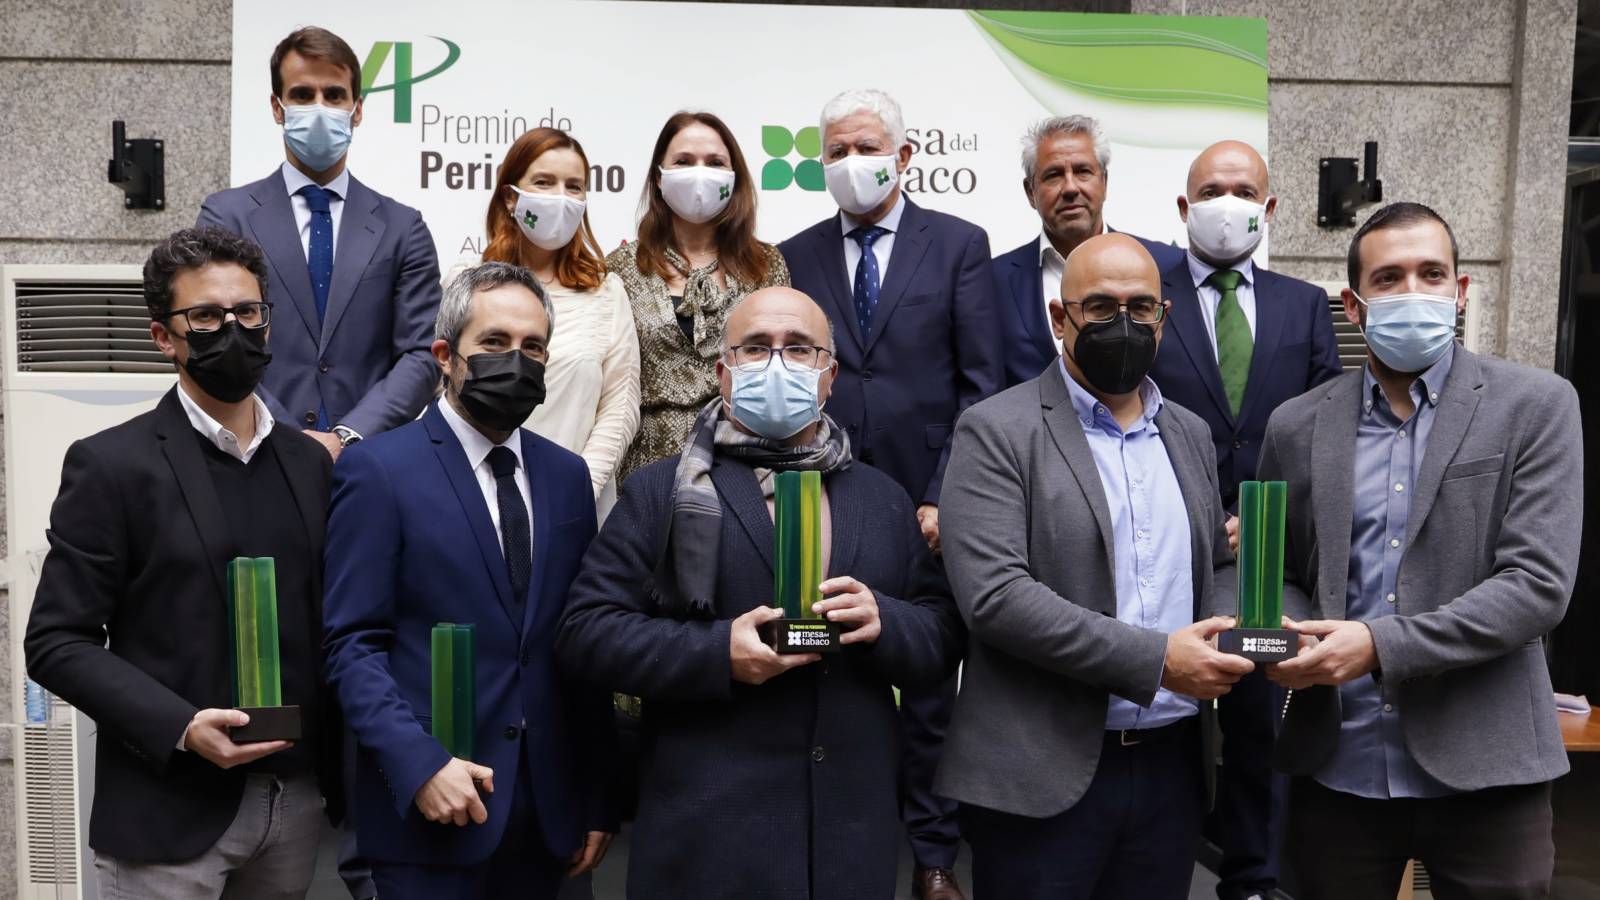 Los premiados junto con los miembros de la Mesa del Tabaco que hicieron entrega del Premio de Periodismo en representación del conjunto del sector.